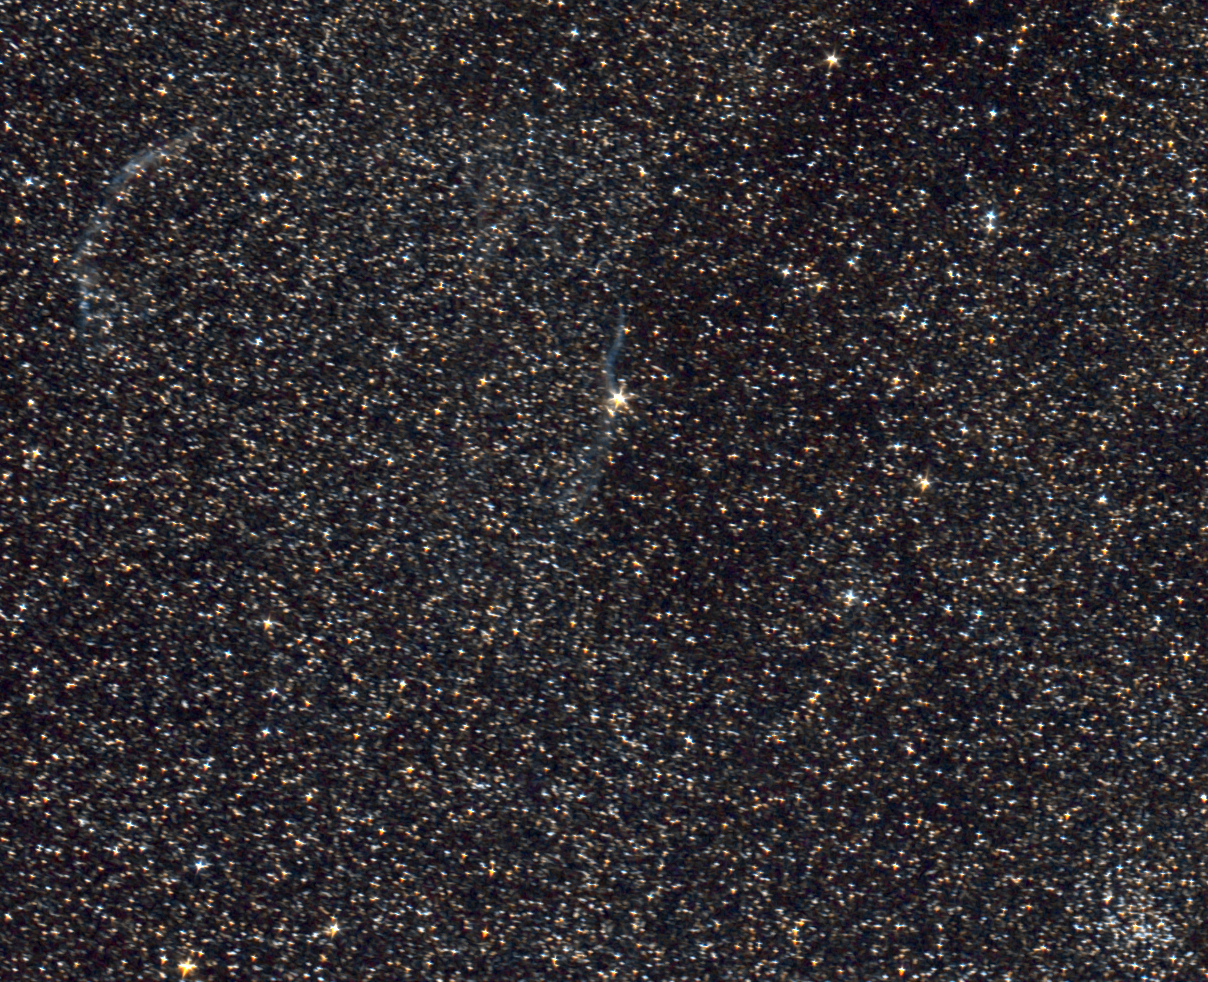 Crop_Dentelles_NGC6940.jpg.3aed59bff1d4f6731c1241e5b2d666ef.jpg